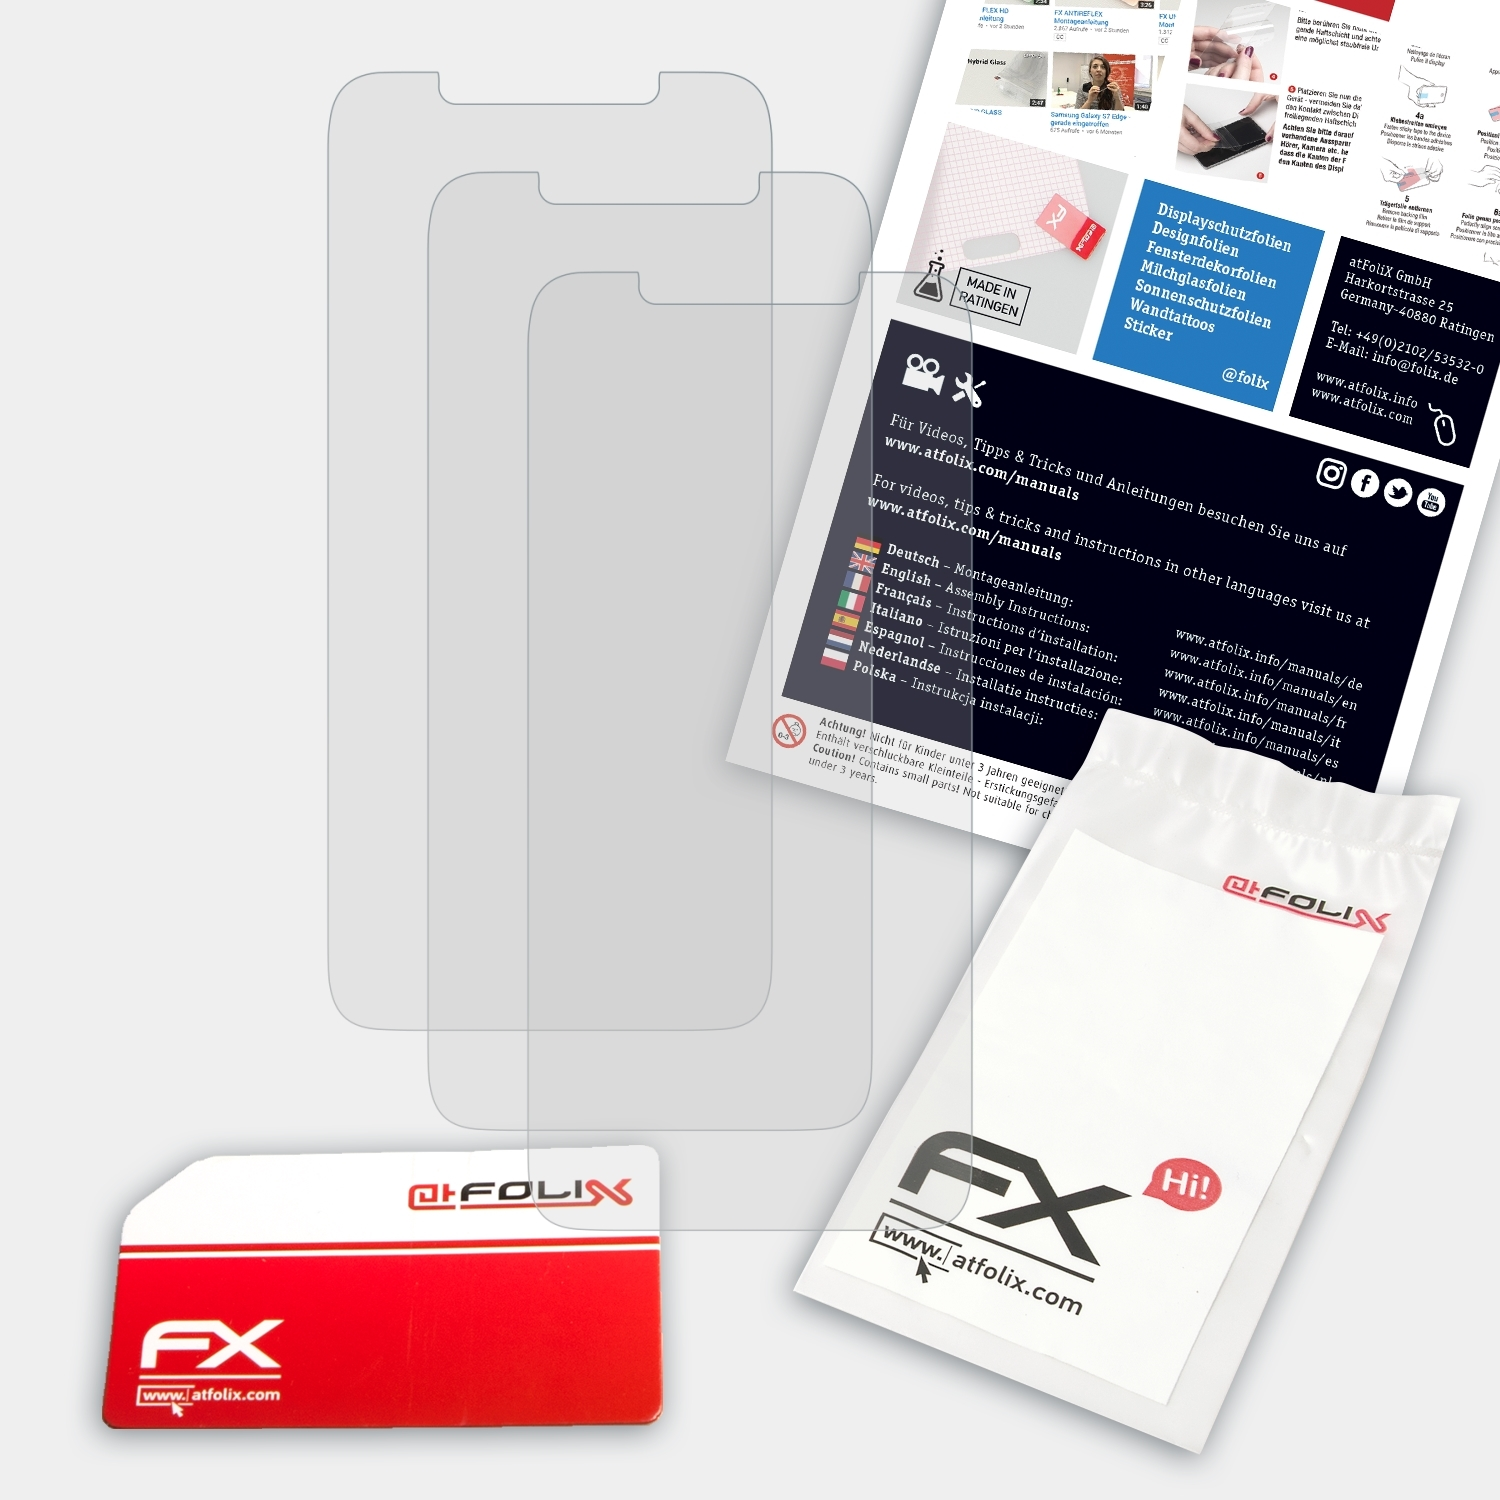 ATFOLIX 3x FX-Antireflex Displayschutz(für Lenovo Pro) S5